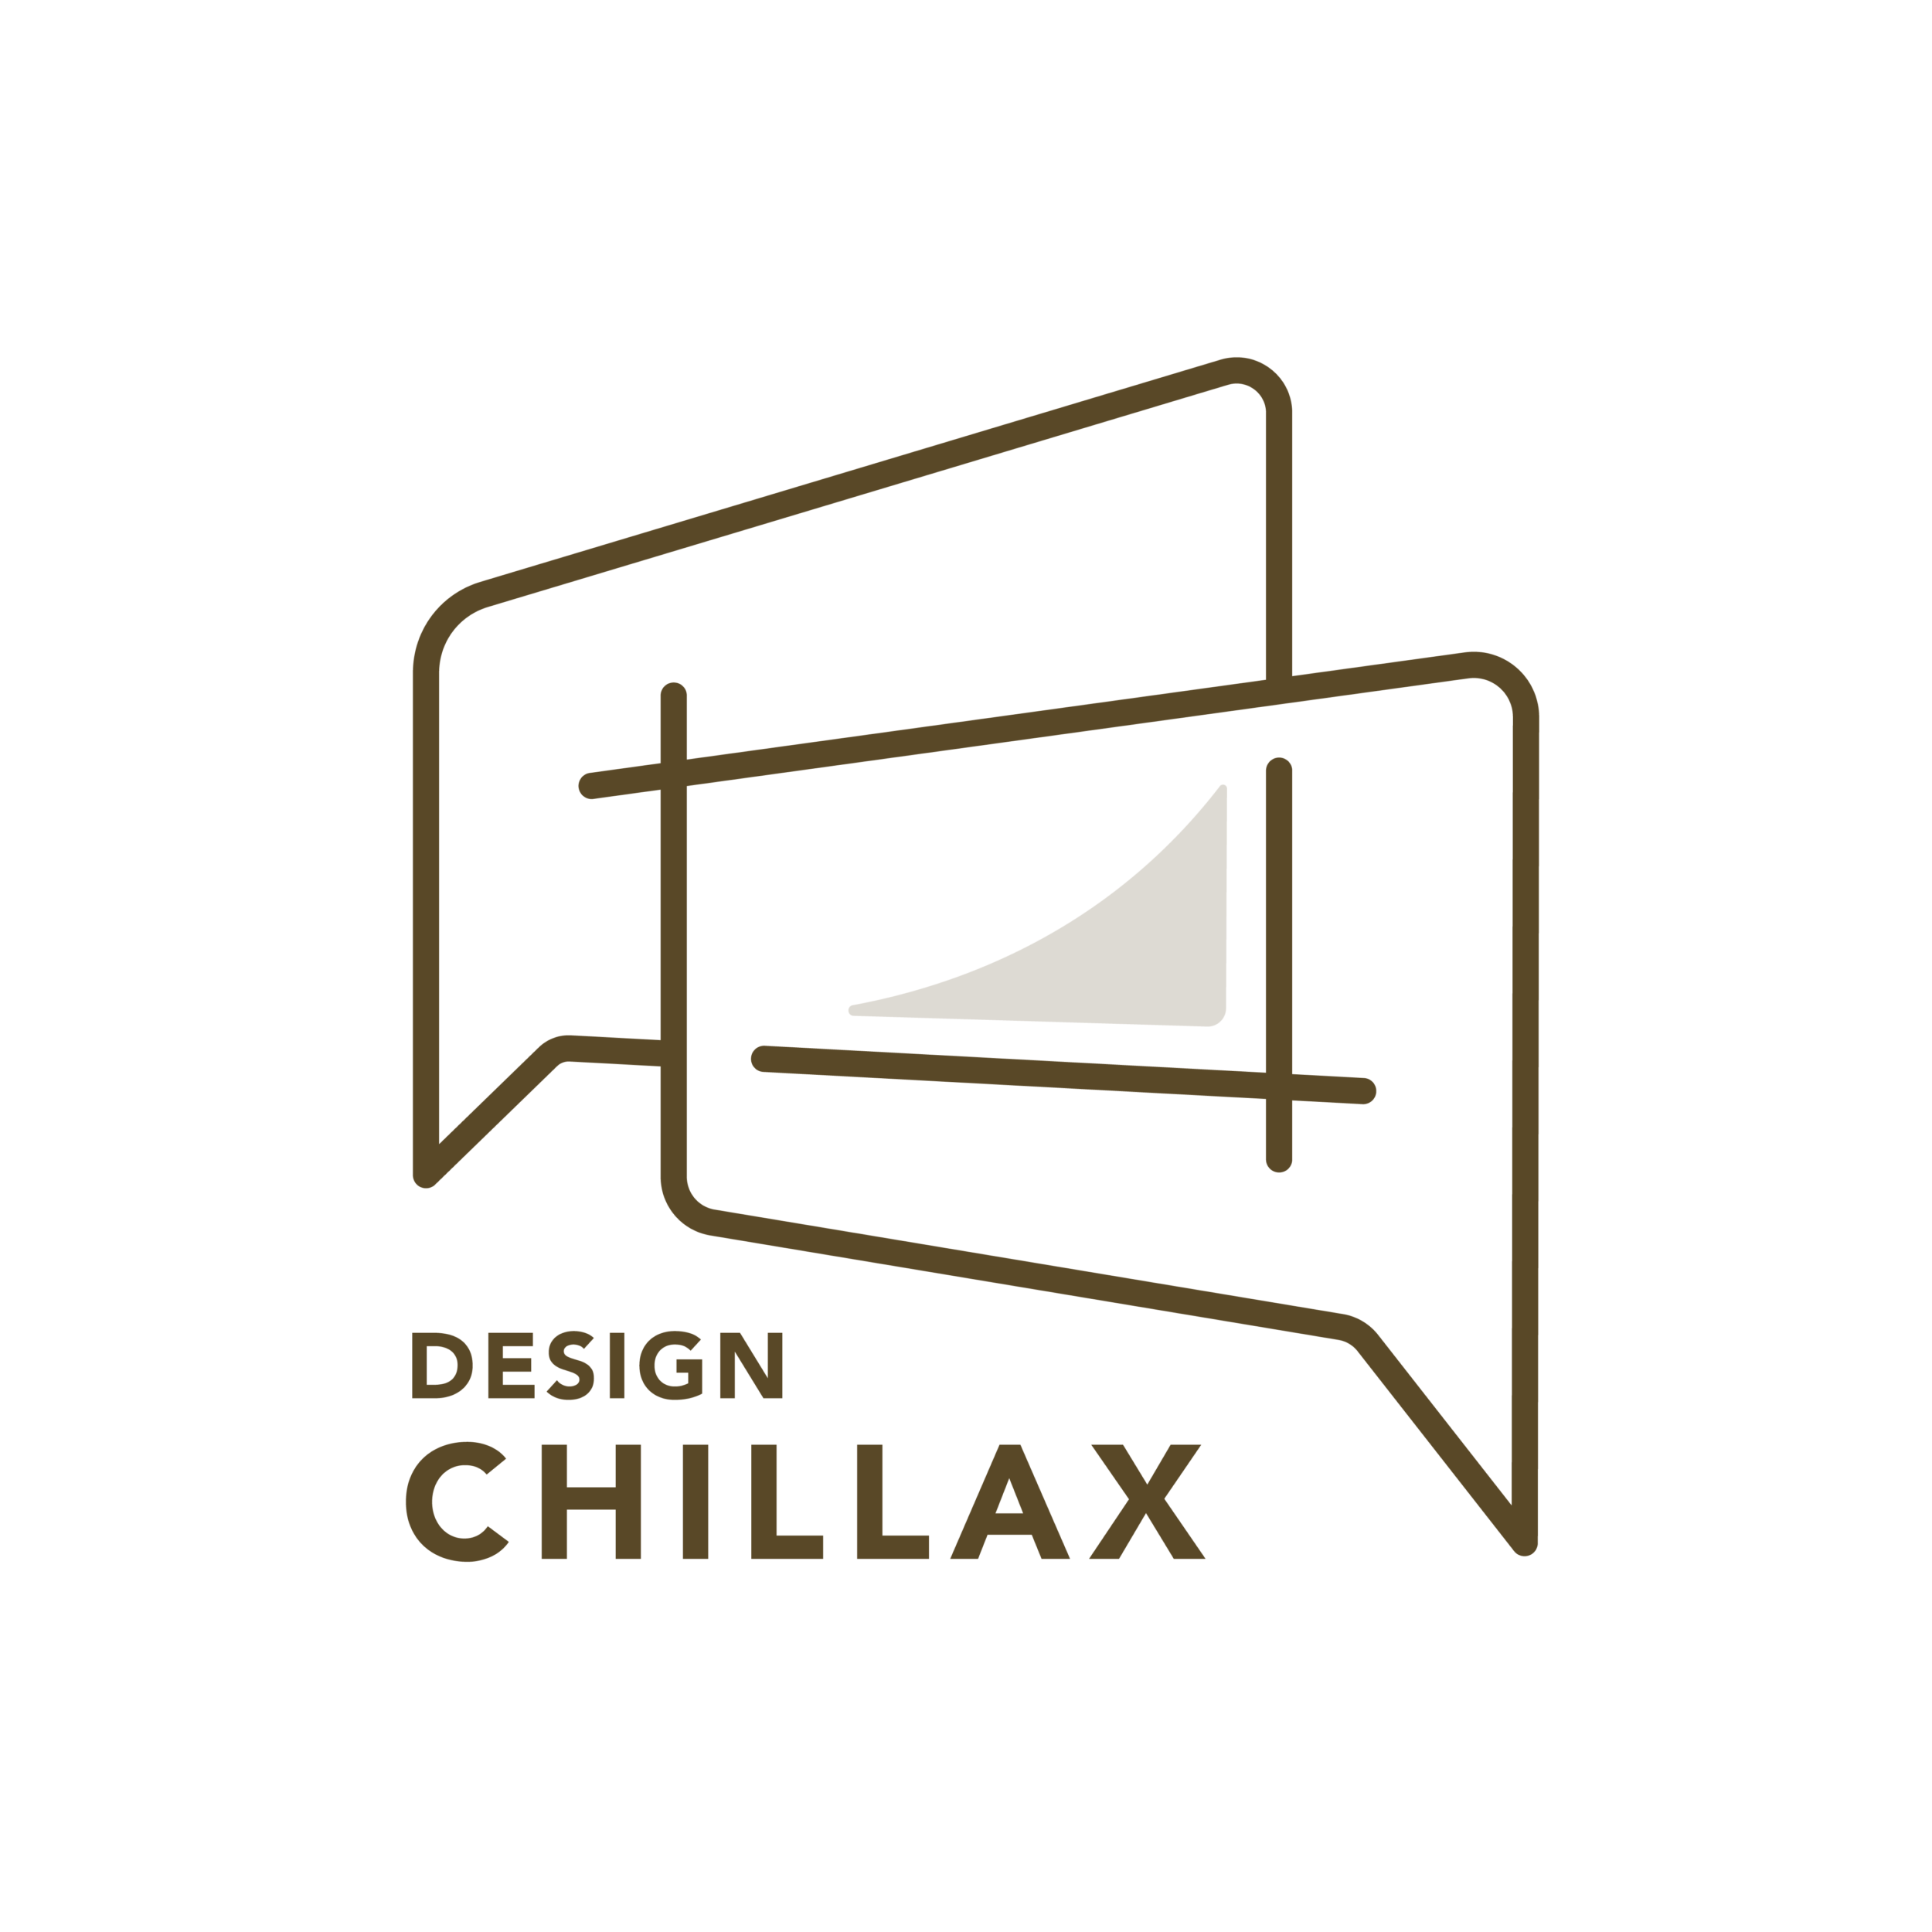 chillaxdesign logo